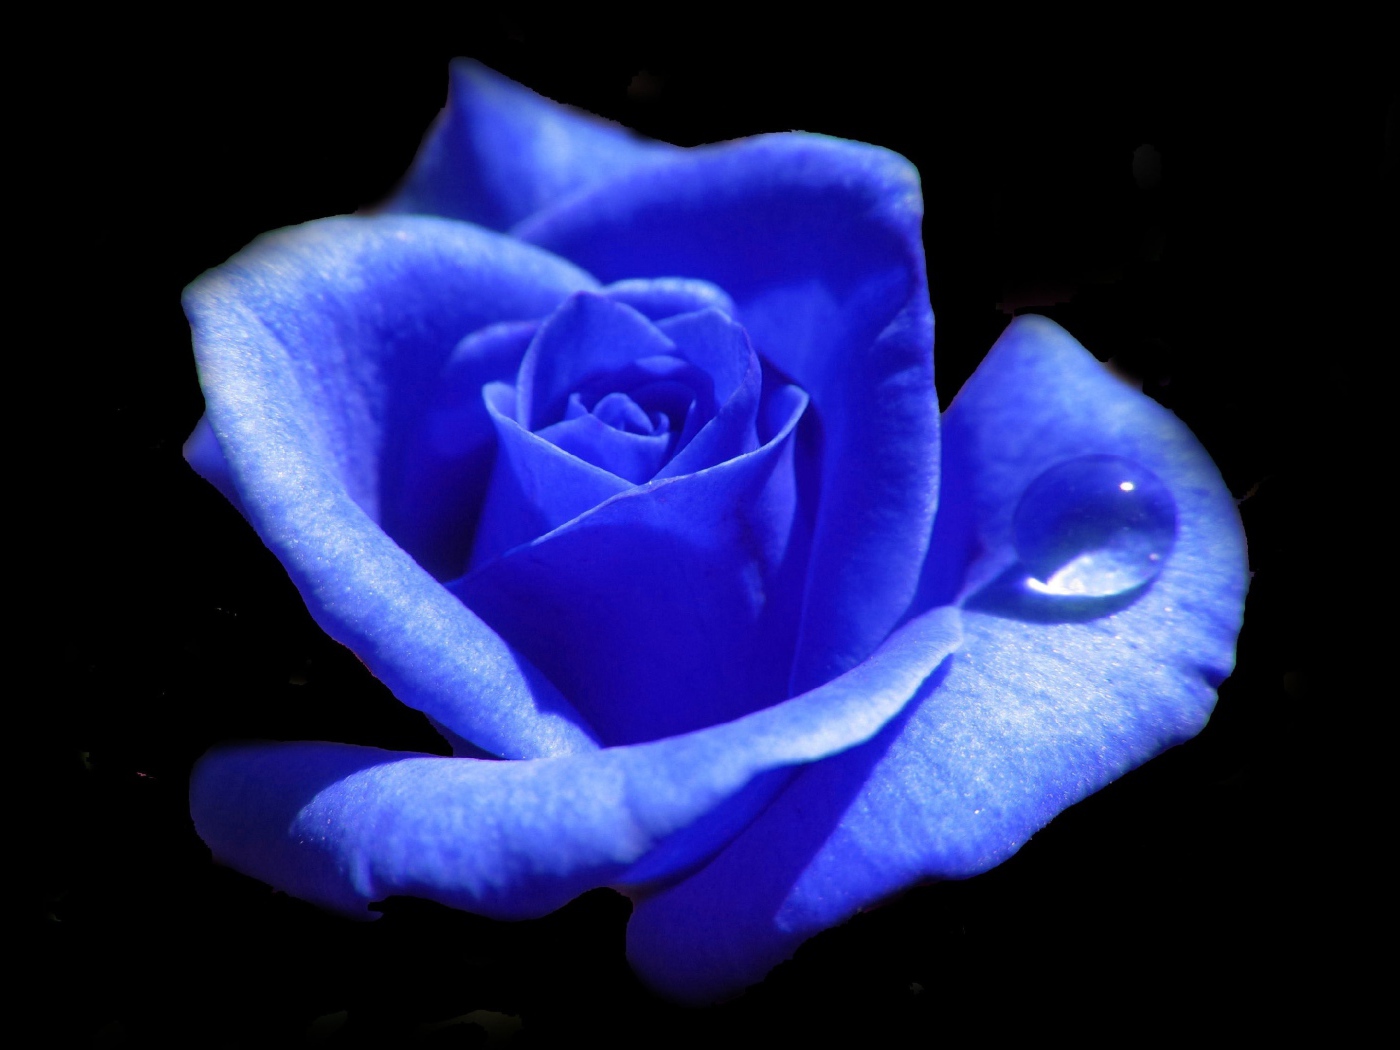 Голубая роза с каплей росы на лепестке 